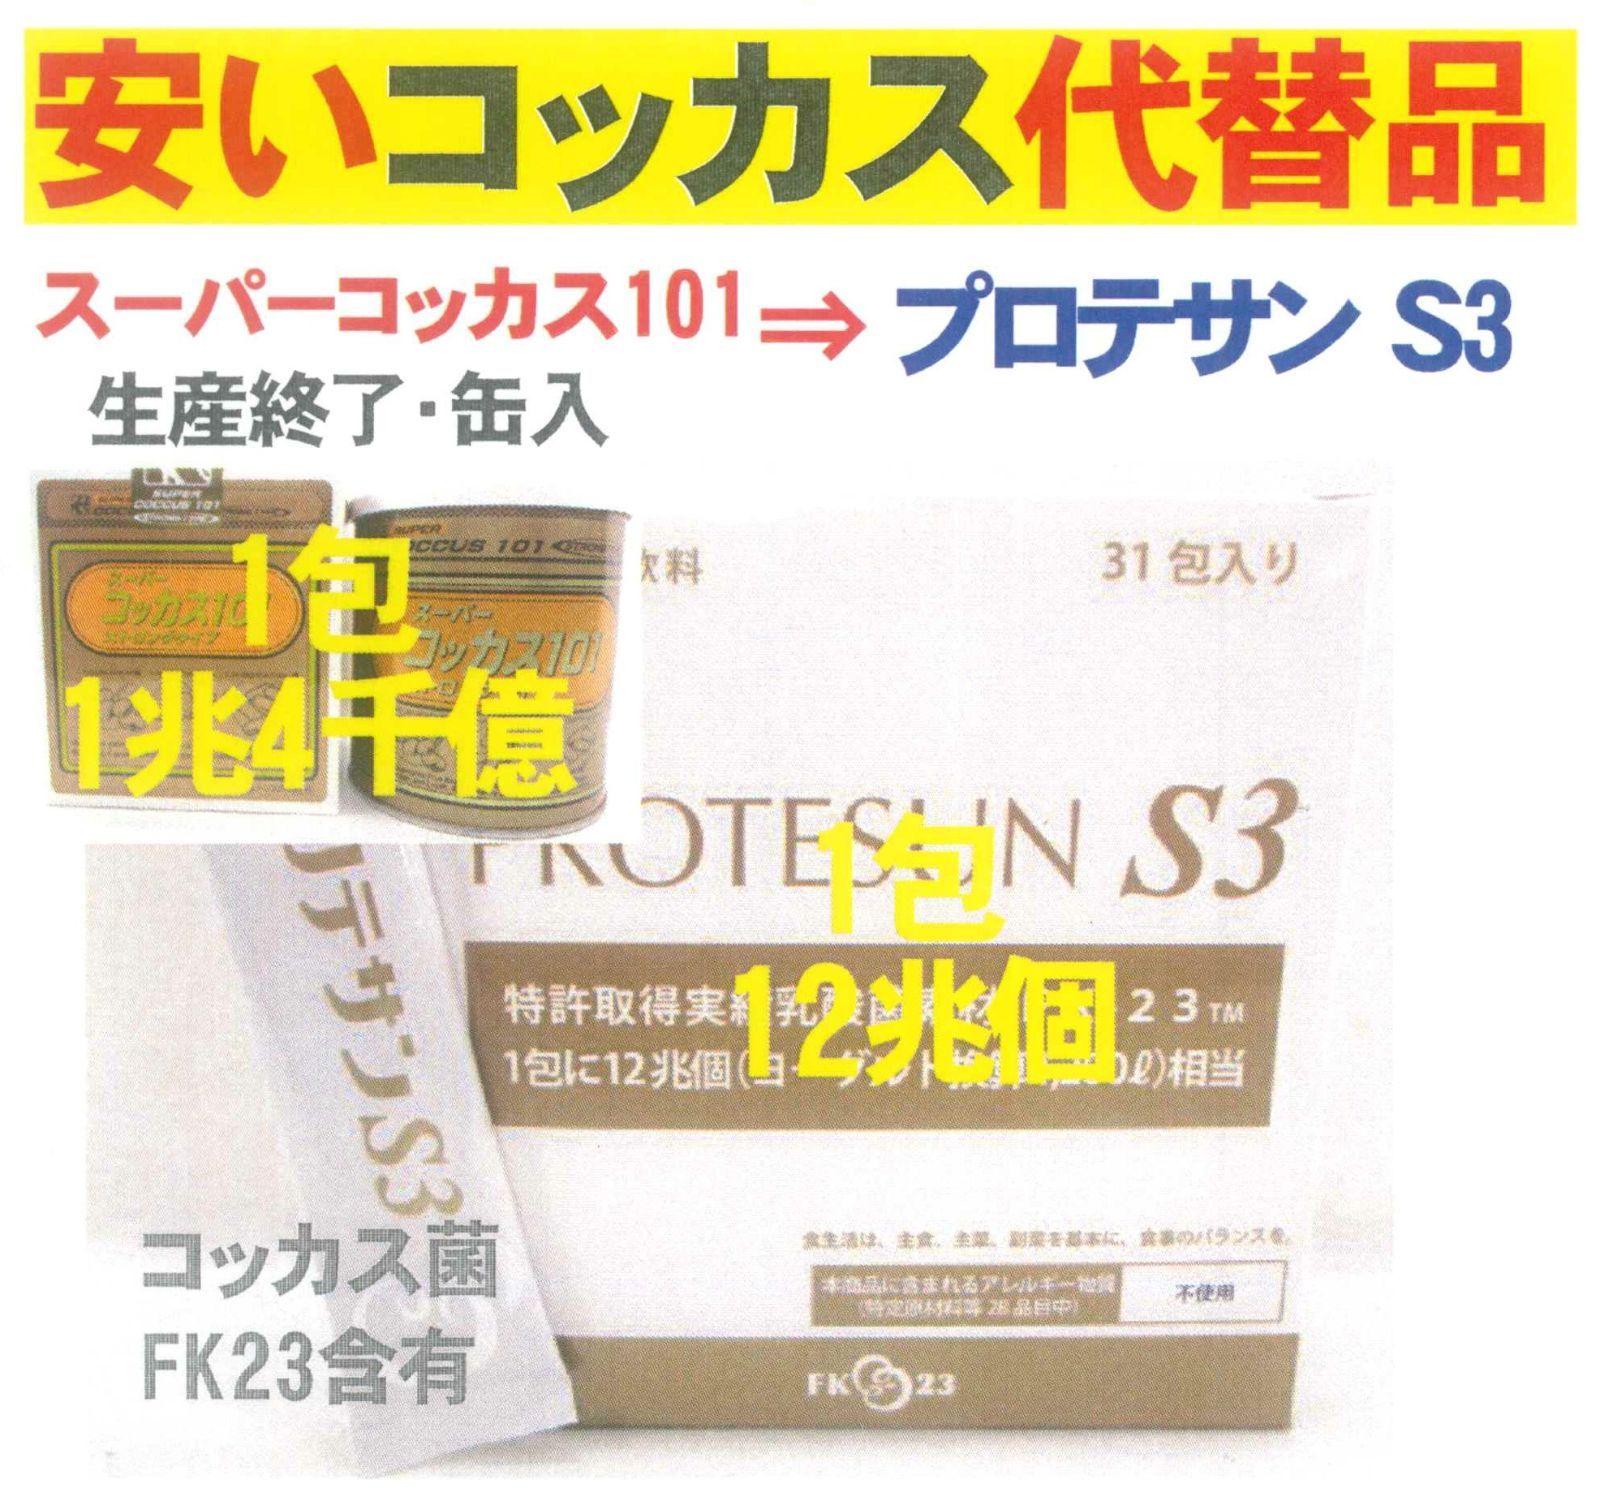 新プロテサンS3(31包入)x1箱、ニチニチ製薬・ヒト由来コッカス菌1包12 ...